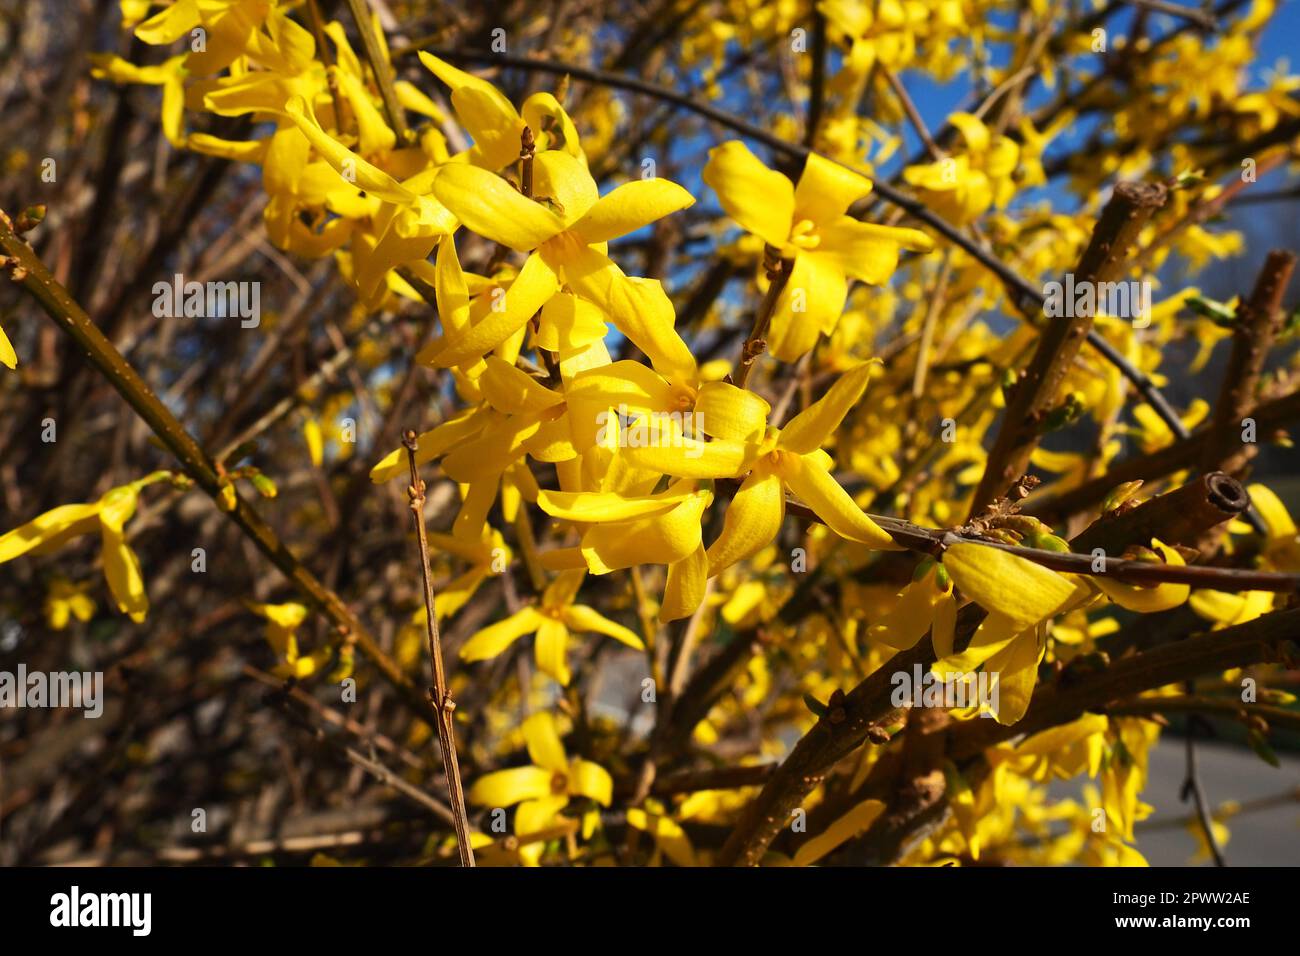 Forsythia est un genre d'arbustes et de petits arbres de la famille des oliviers. Nombreuses fleurs jaunes sur les branches et les pousses. Classe Dicotyledonous Order Lamiace Banque D'Images